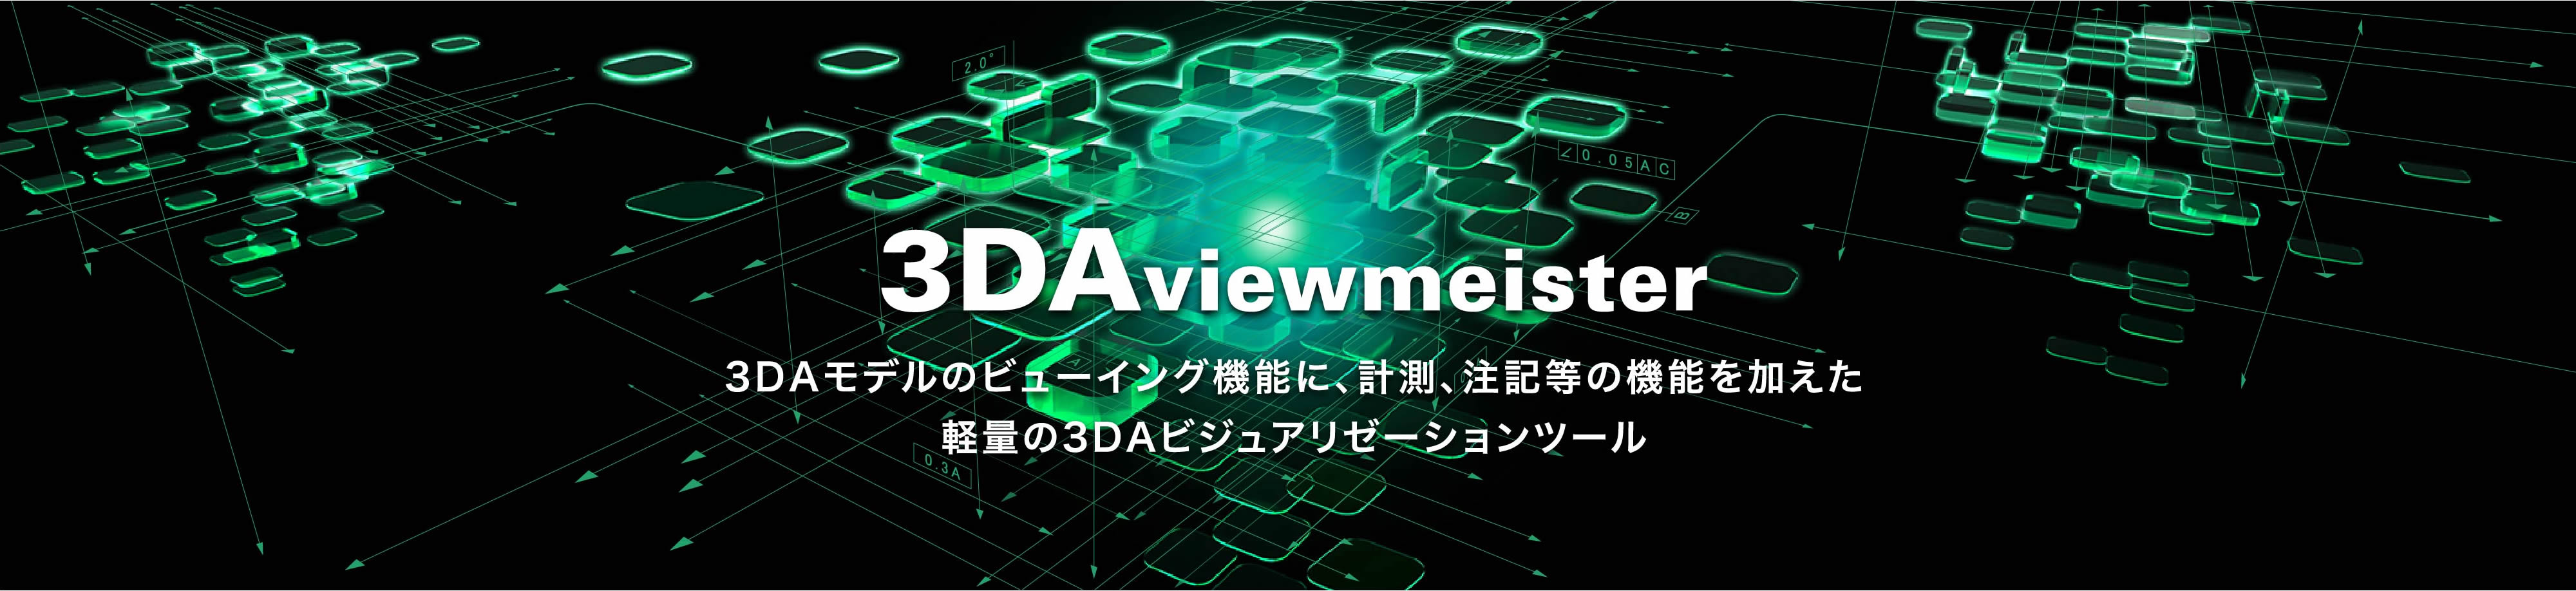 3DAviewmeister　3DAモデルのビューイング機能に、計測、注記等の機能を加えた軽量の3DAビジュアリゼーションツール